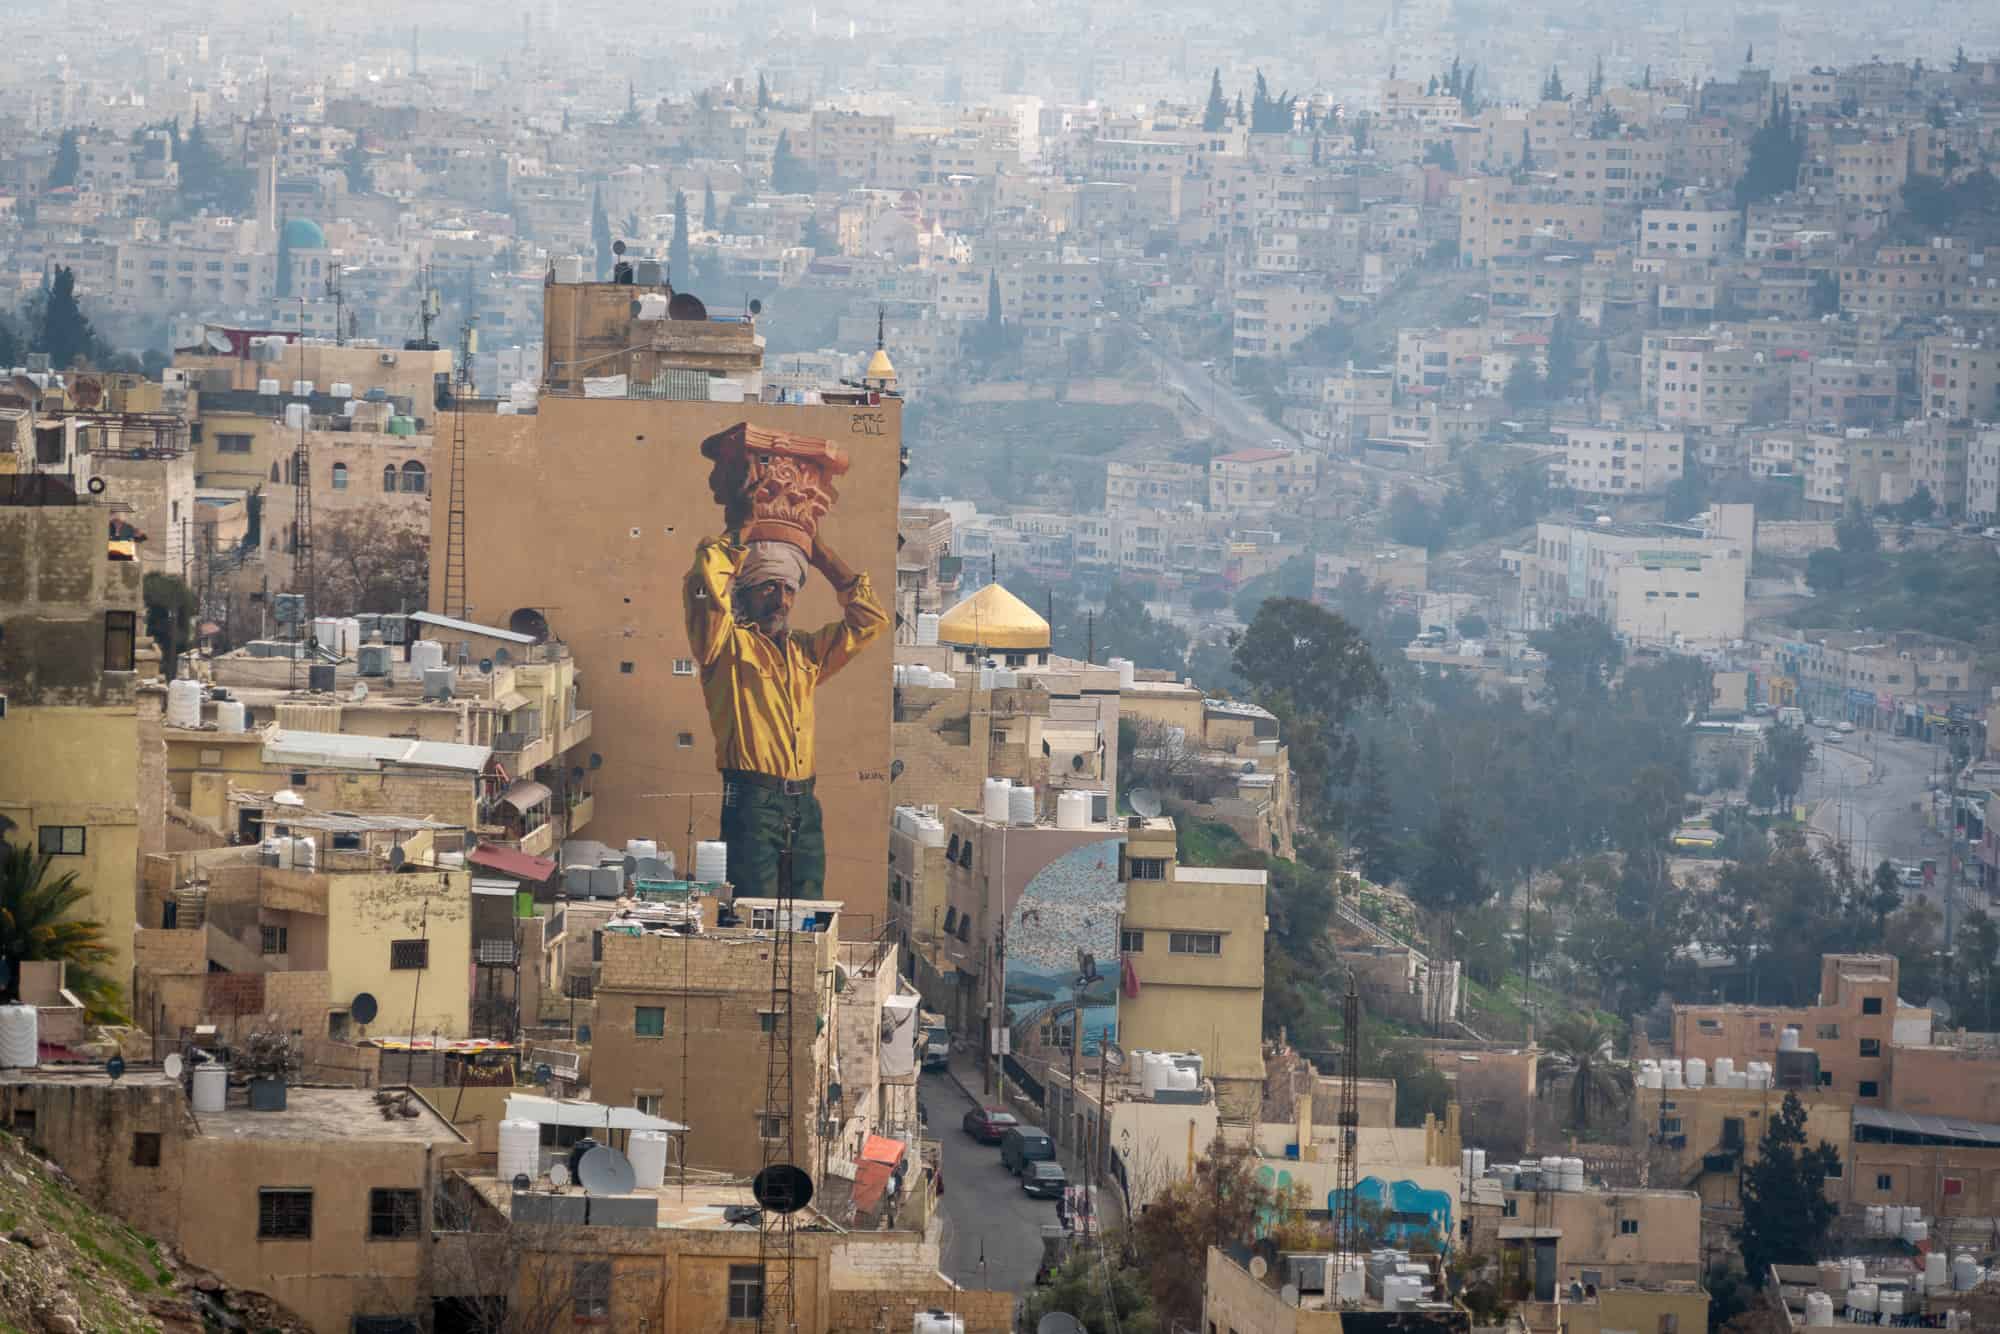 Jordan - Street art on the side of buildings in Amman